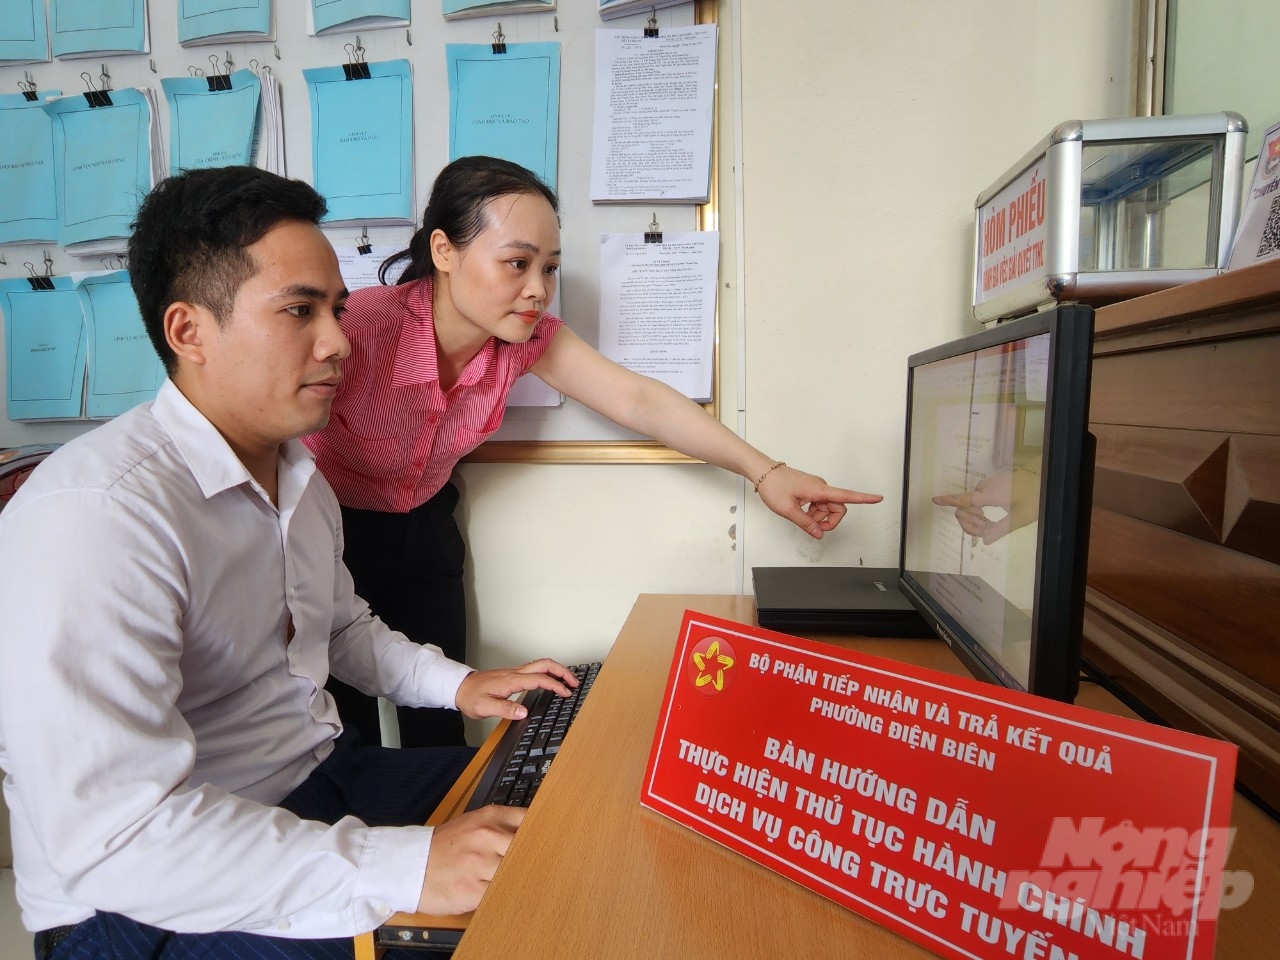 Người dân được cán bộ phường Điện Biên hướng dẫn tận tình khi thực hiện thủ tục hành chính dịch vụ công trực tuyến. Ảnh: Quốc Toản.